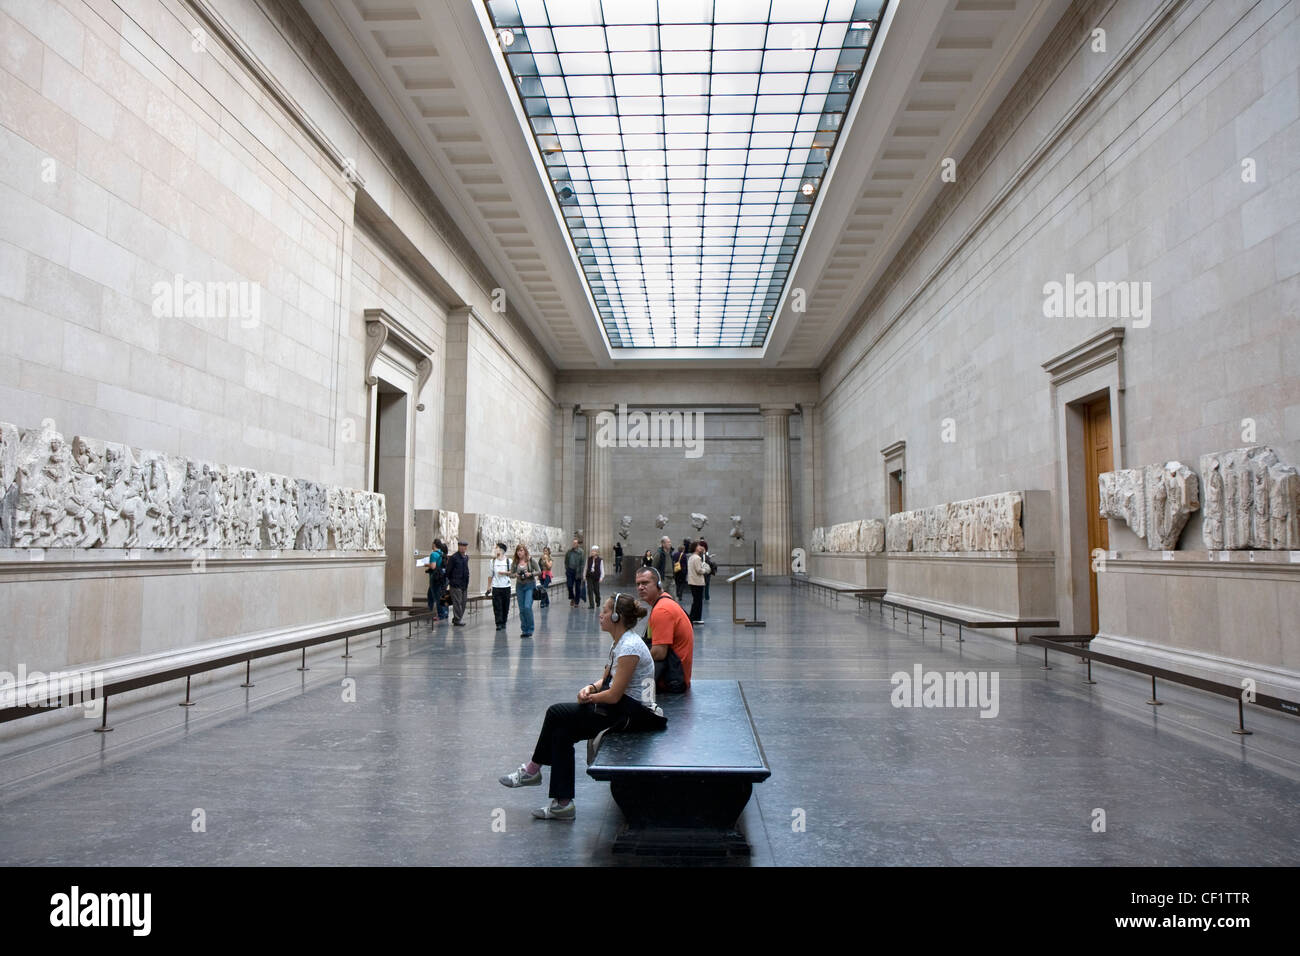 Las esculturas del Partenón, denominado a menudo "Mármoles de Elgin" en exhibición en el Museo Británico de Londres. Foto de stock